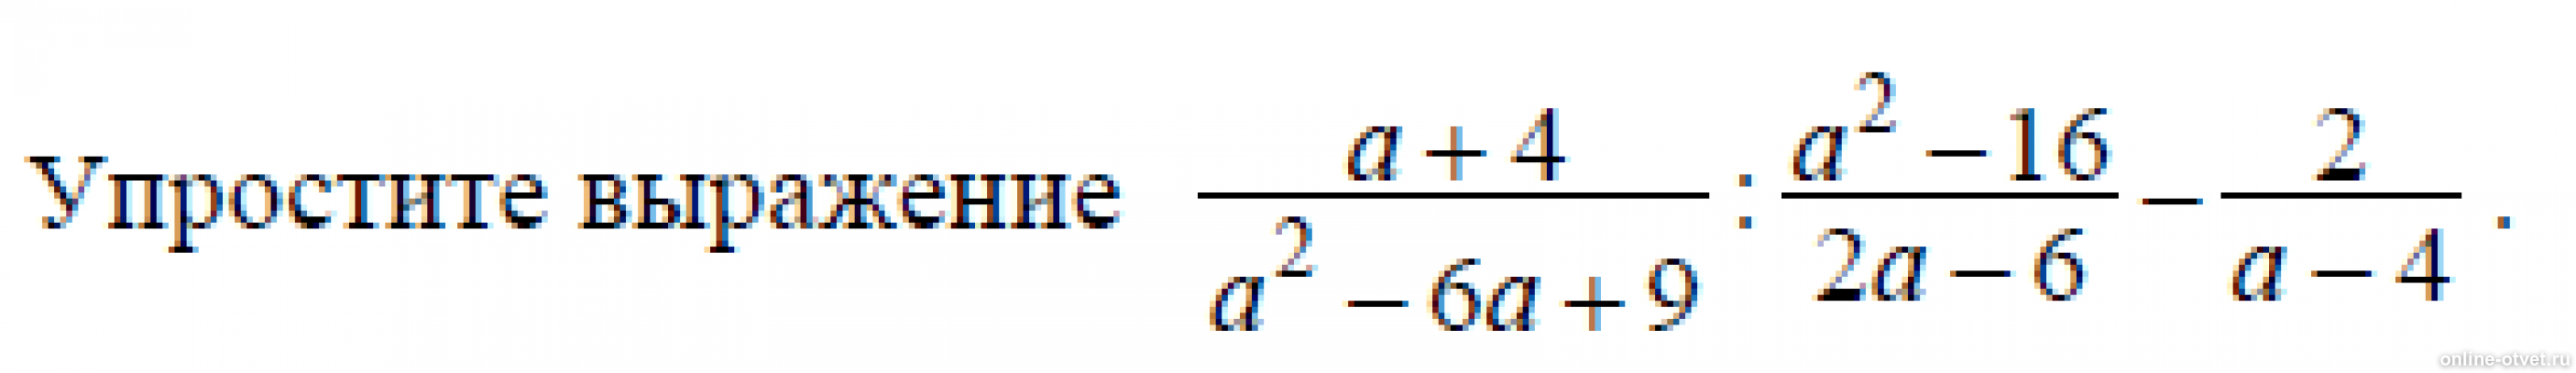 Упростите выражение п 2 а. A-4/A^2+4+16 упростить выражение. Упростите выражение 4с с-2 с-4 2. Упростите выражения (a-8)^2. Упростите выражения а+2 а-3-4-а а+4.